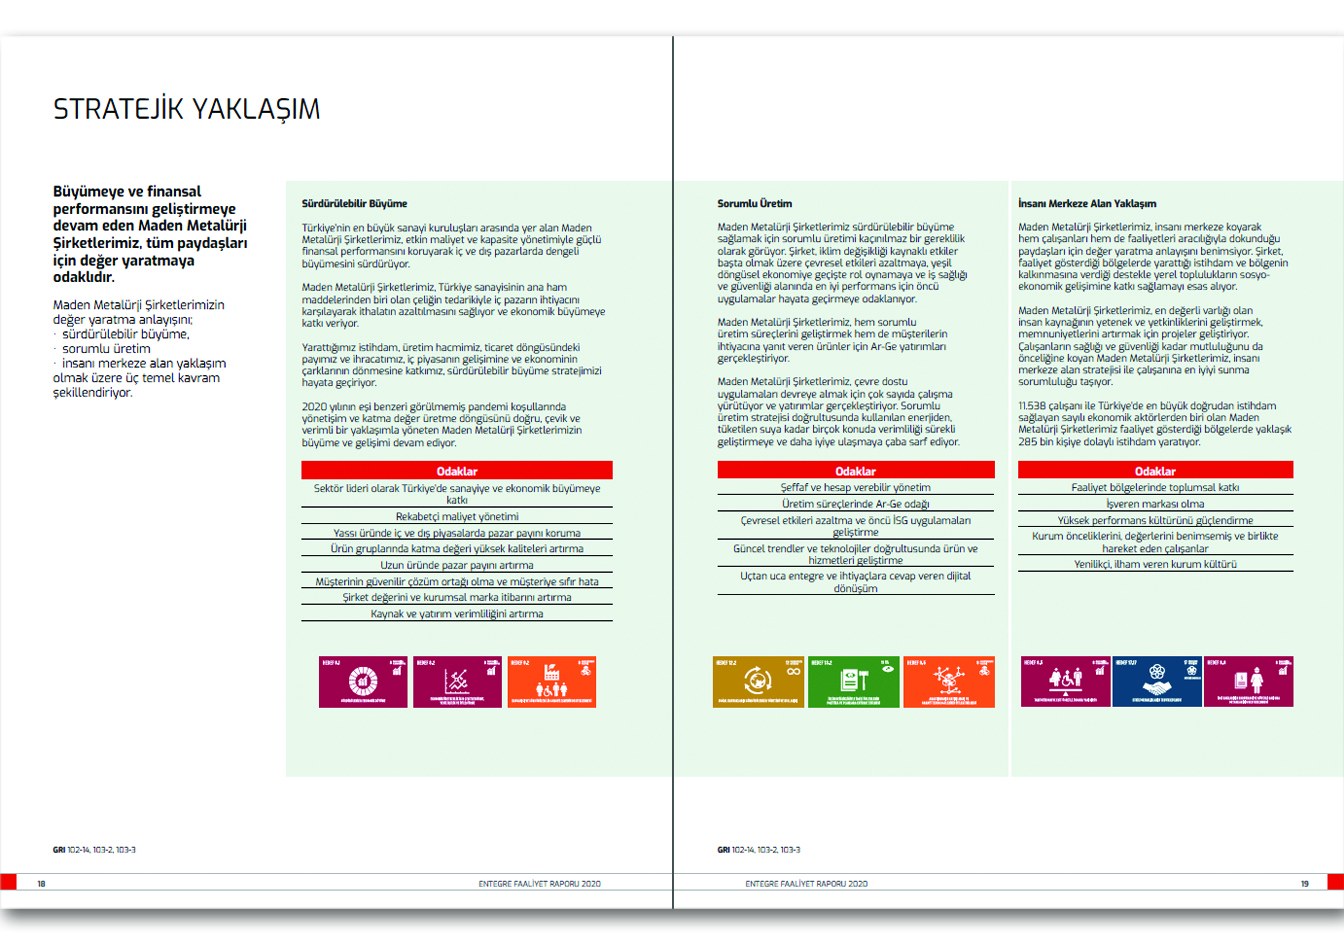 OYAK MADEN METALÜRJİ GRUBU / 2020 Entegre Faaliyet Raporu / 2020 Integrated Annual Report